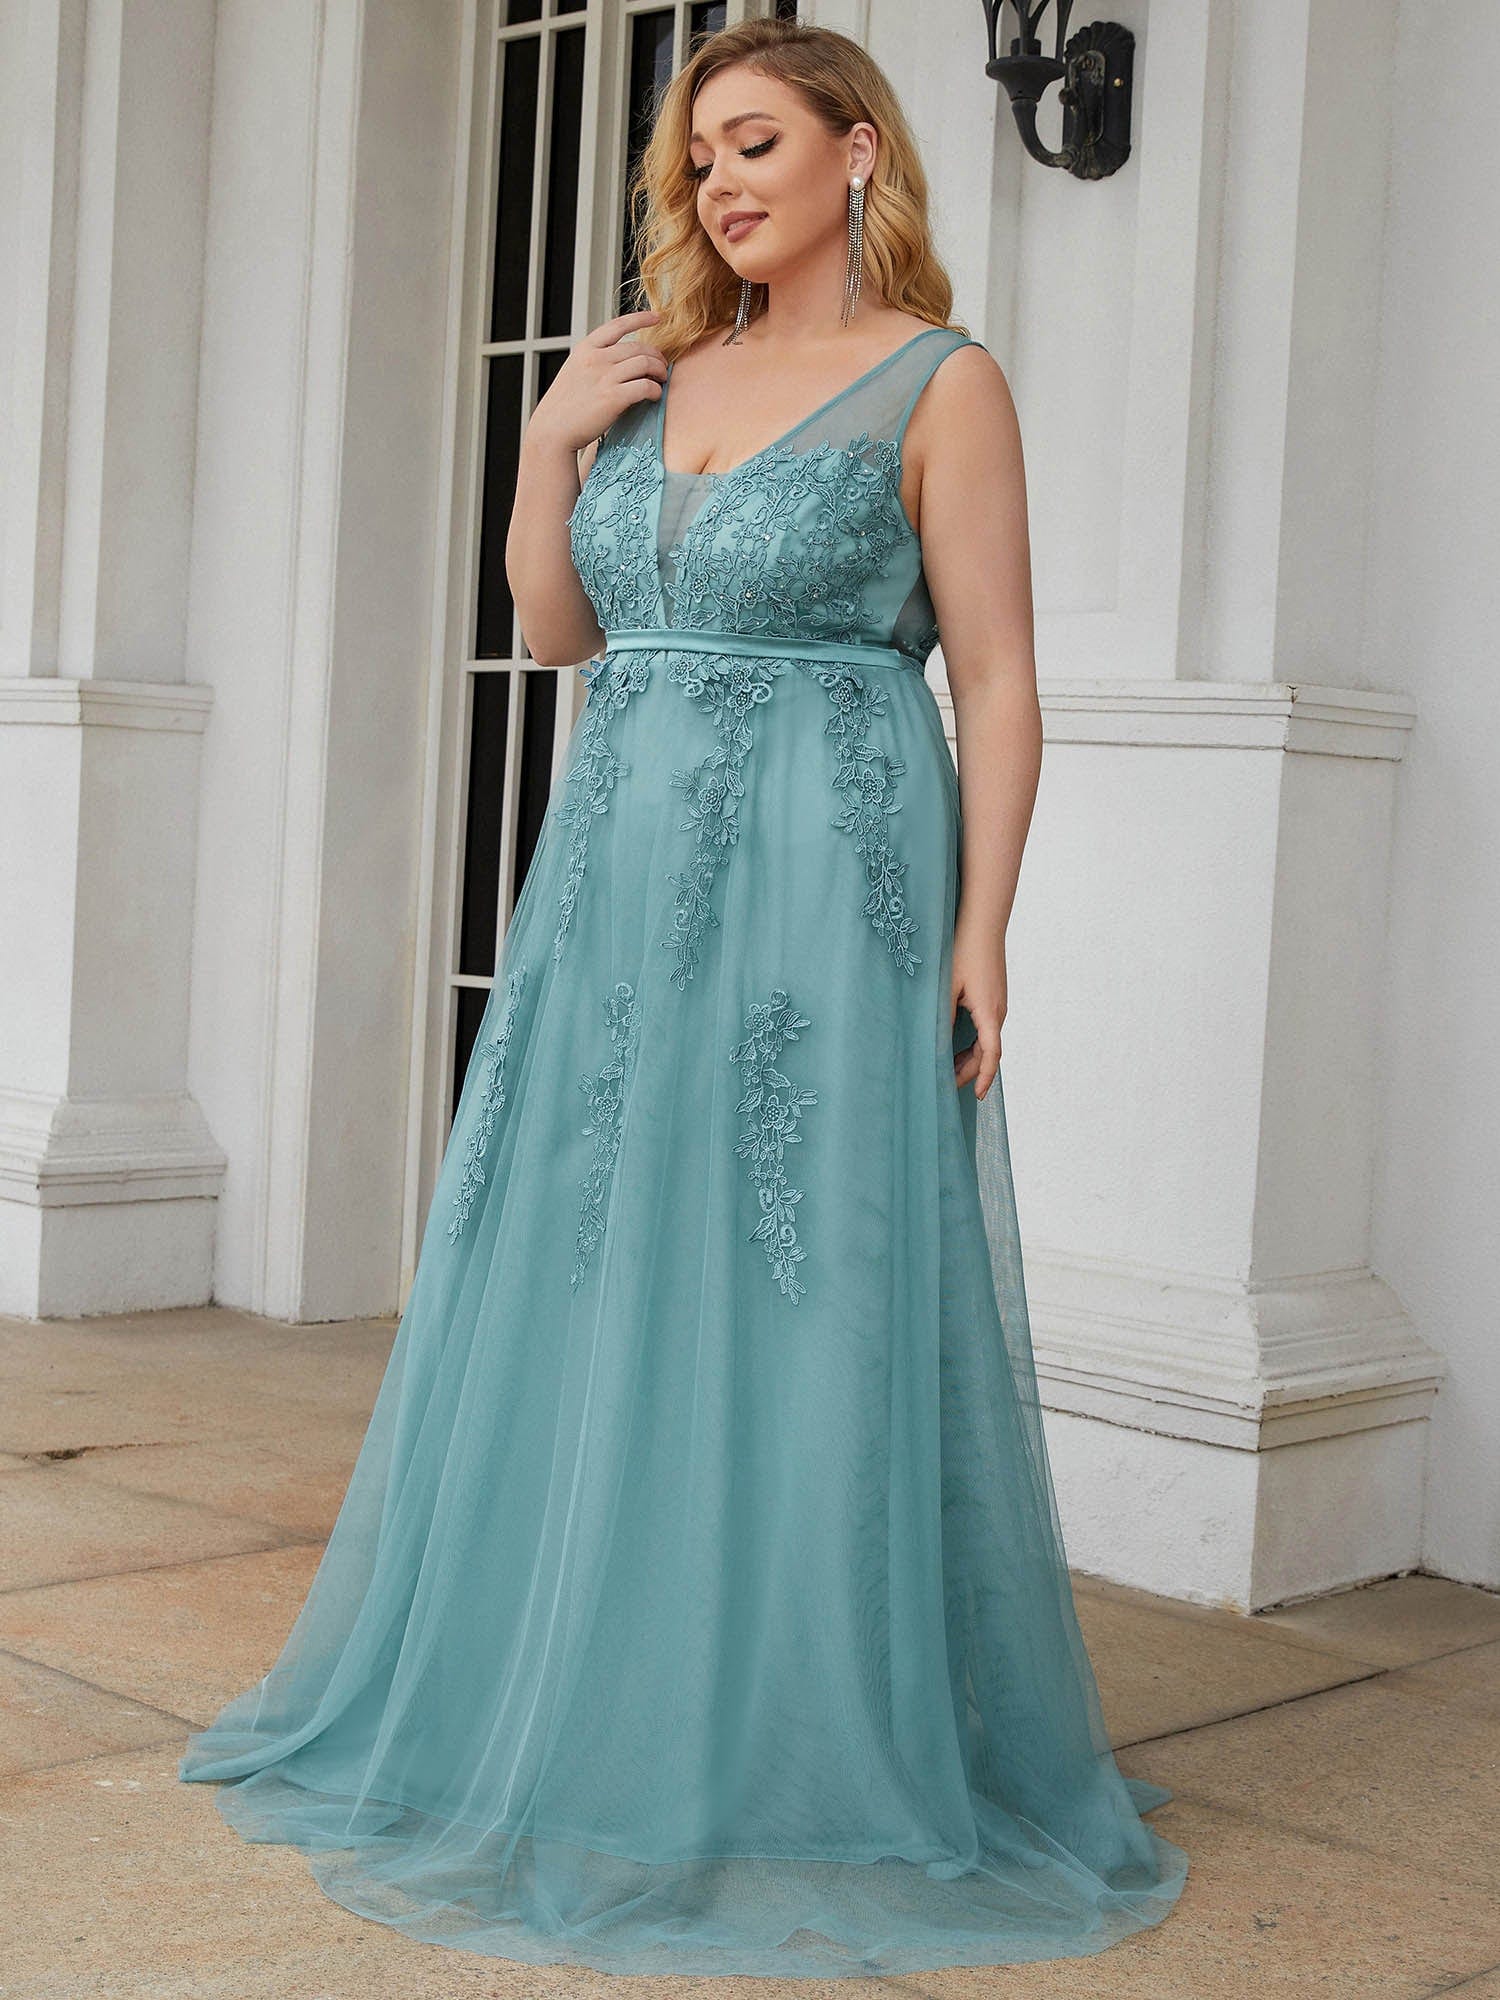 Custom Size Maxi Long Elegant Ethereal Tulle Evening Dress